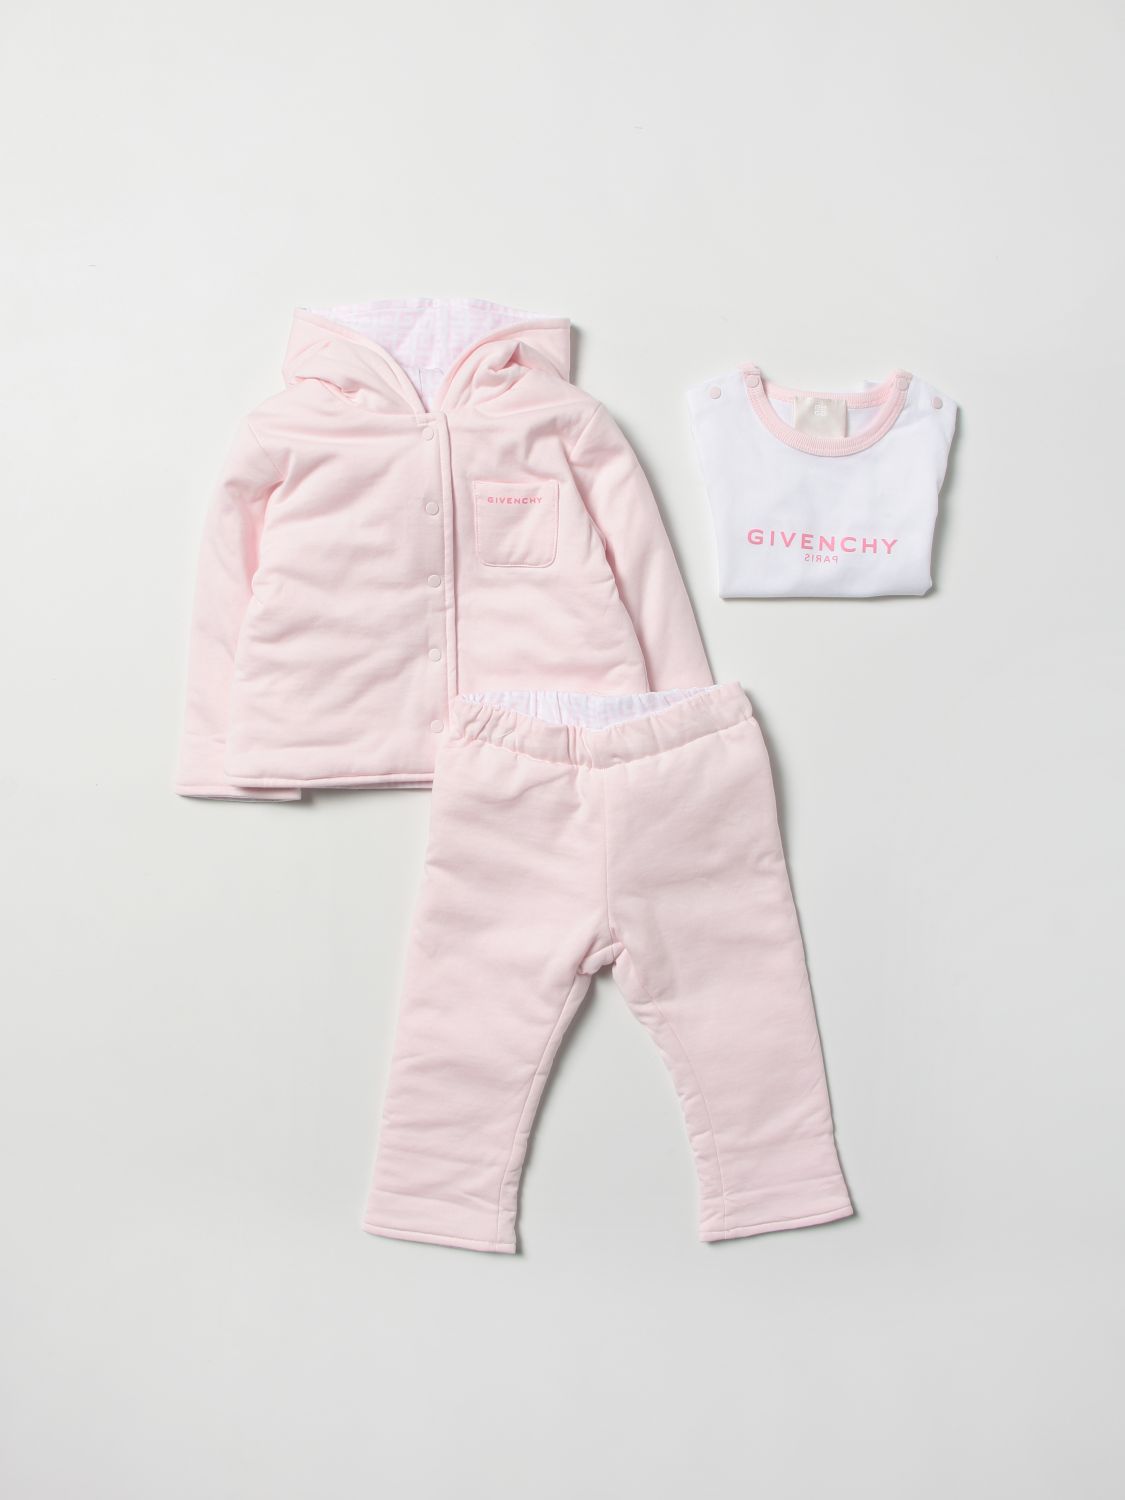 Completo Givenchy: Set giacca + pantalone + t-shirt Givenchy con logo rosa 3